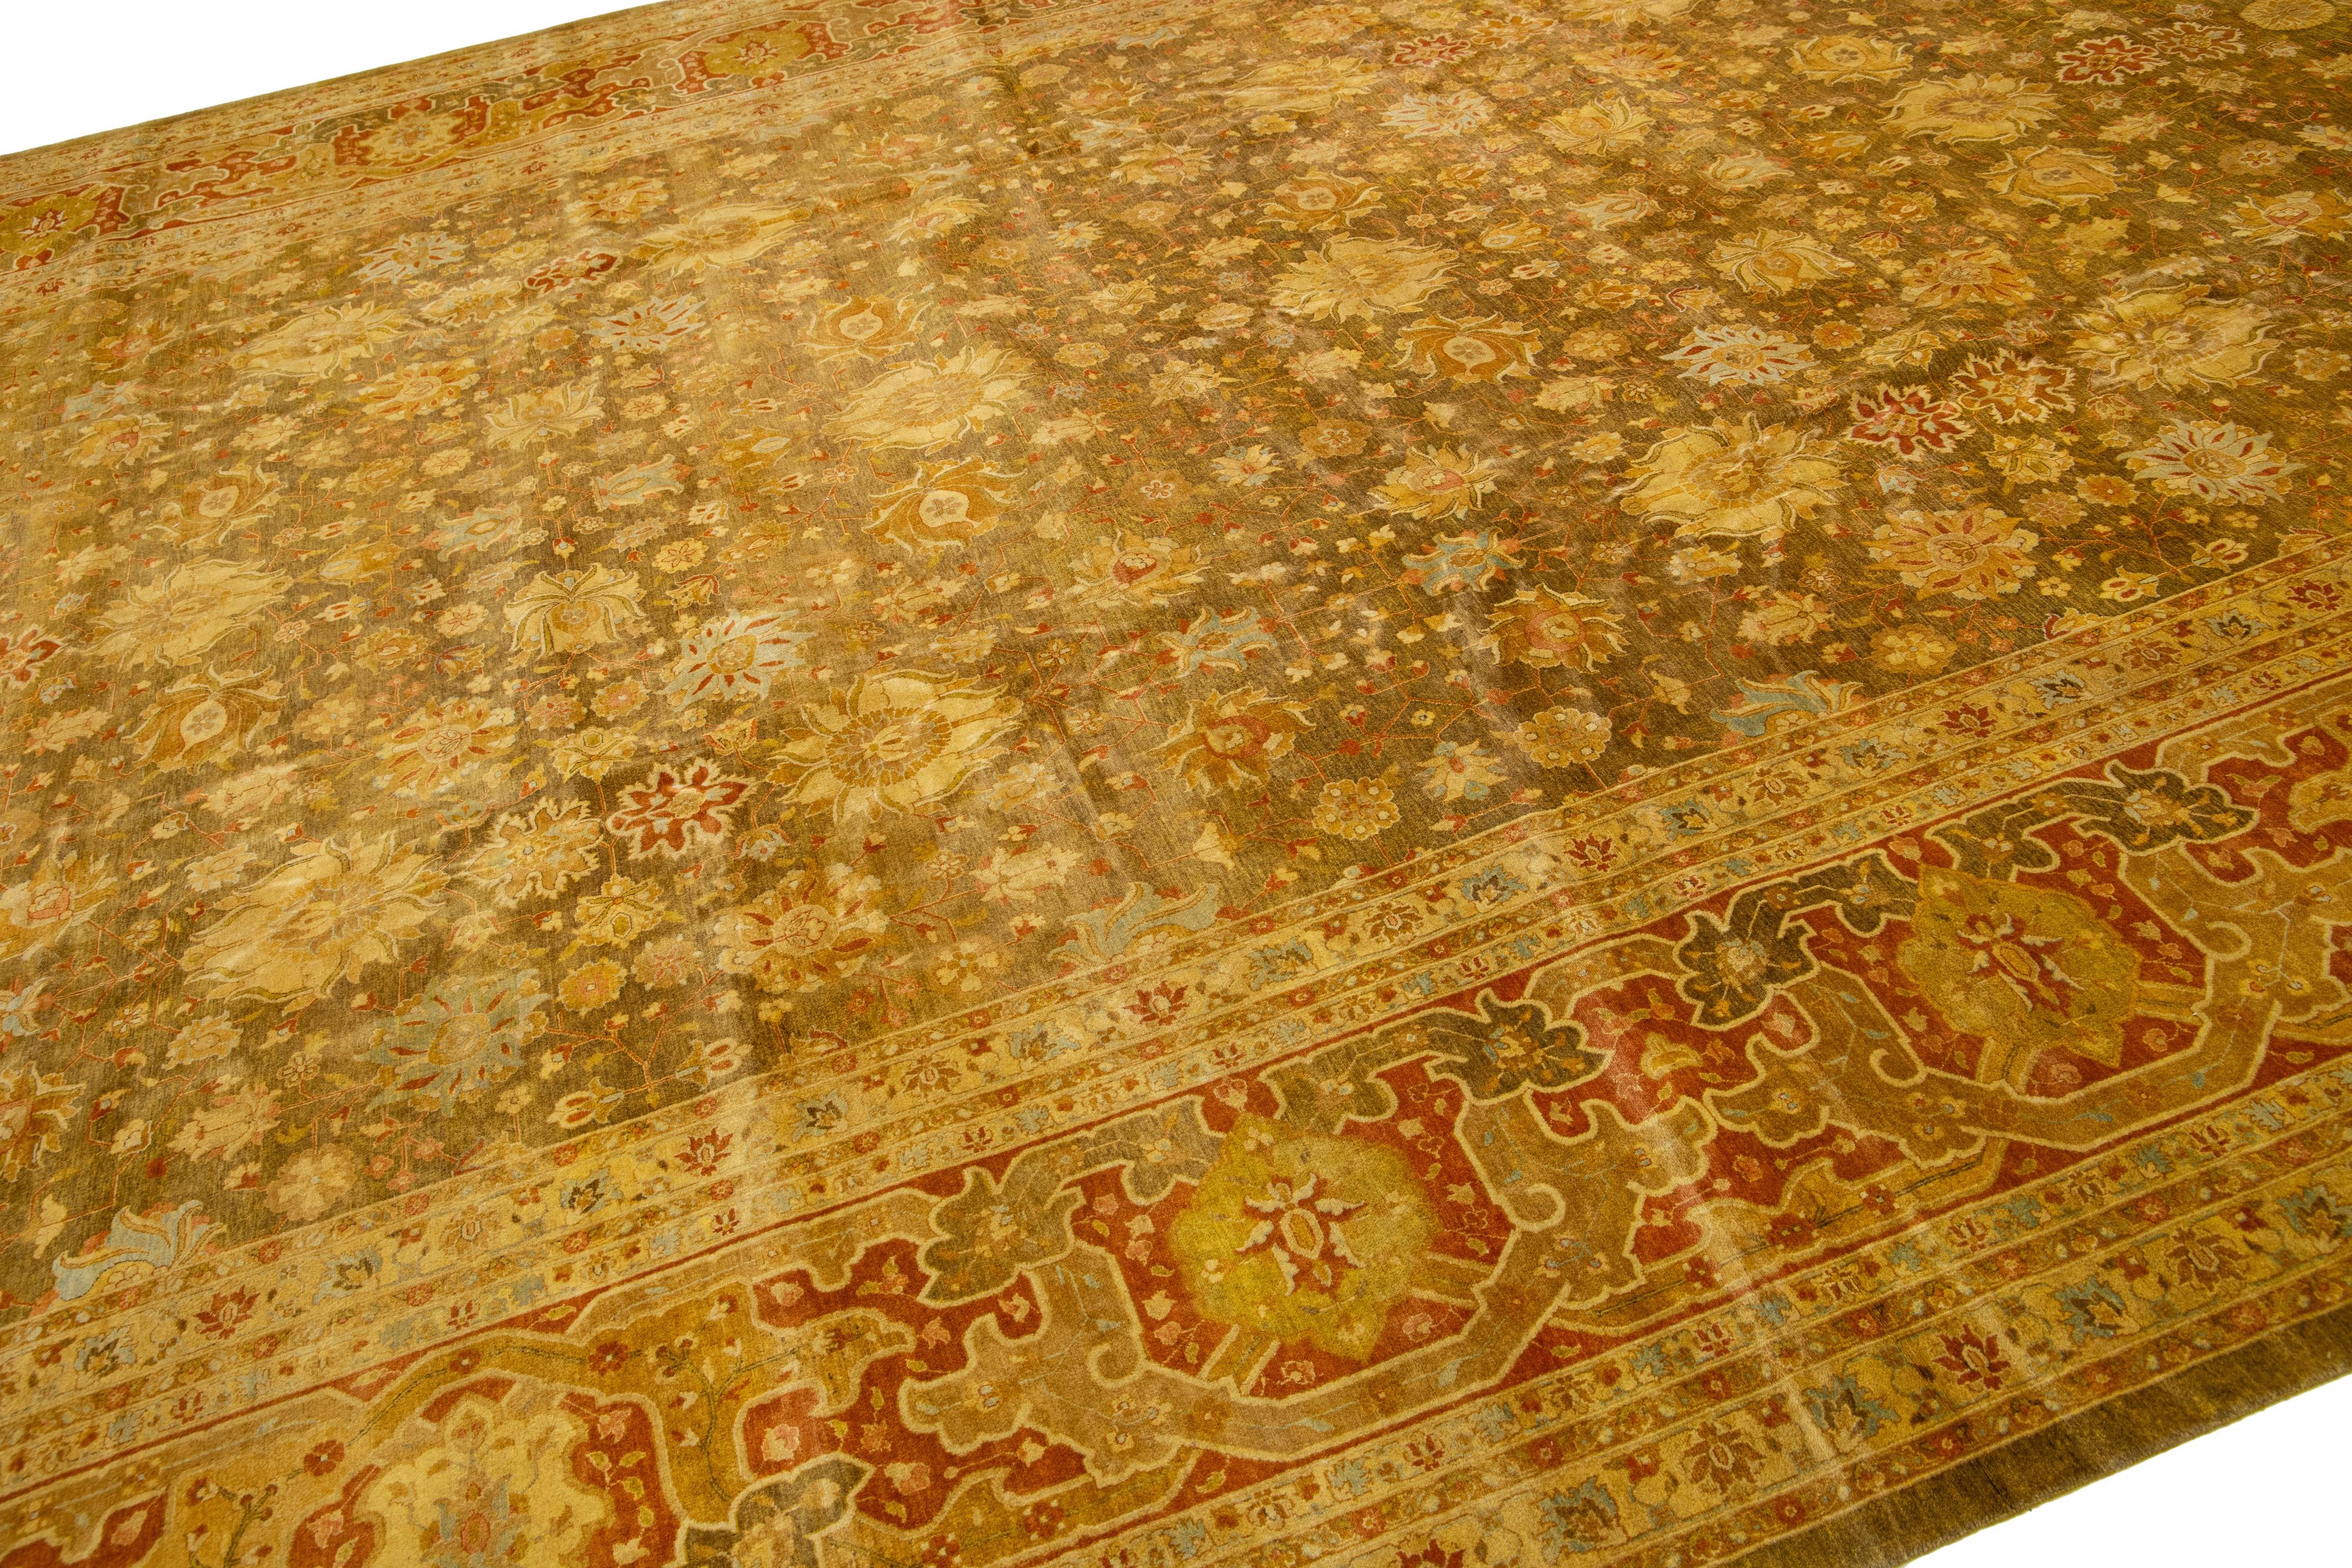 Le tapis en laine fabriqué à la main Tabriz Style présente un extraordinaire motif floral traditionnel. Le contraste saisissant entre le fond marron clair et les couleurs vertes et dorées éclatantes amplifie le design.

Ce tapis mesure 12'2